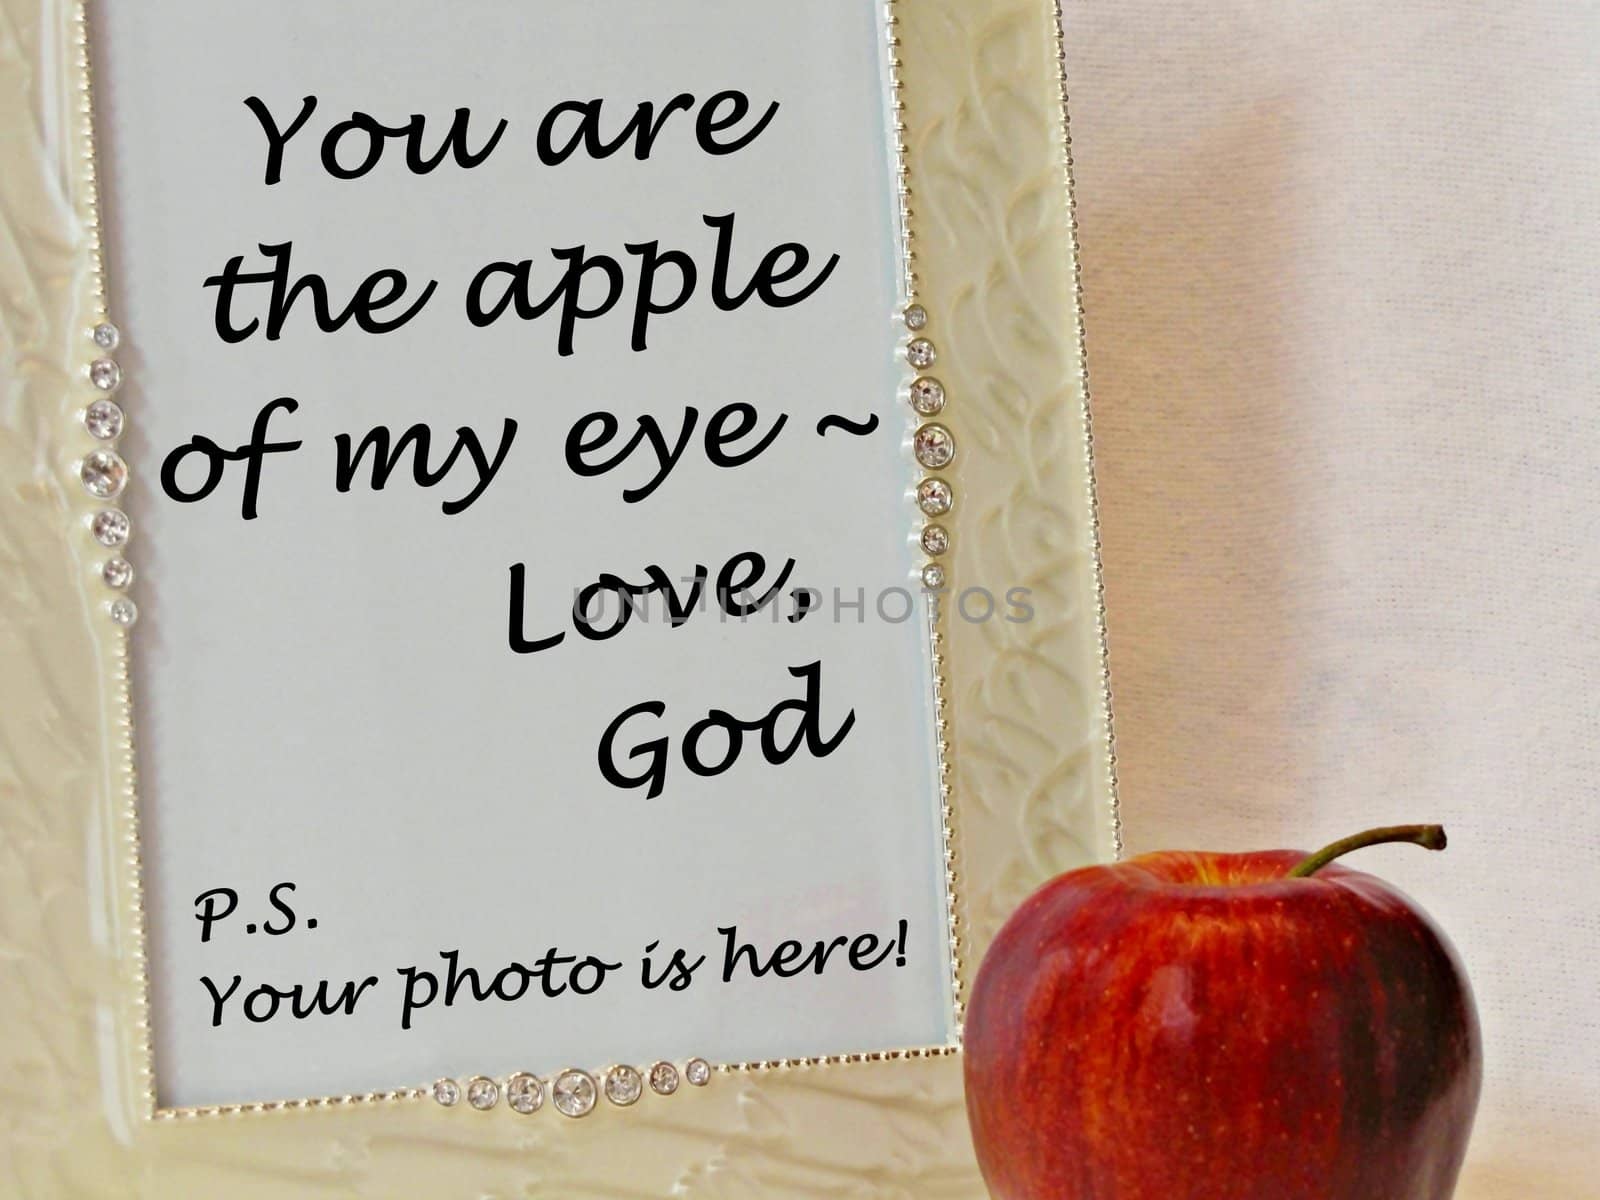 Apple of My Eye...God by darla1949